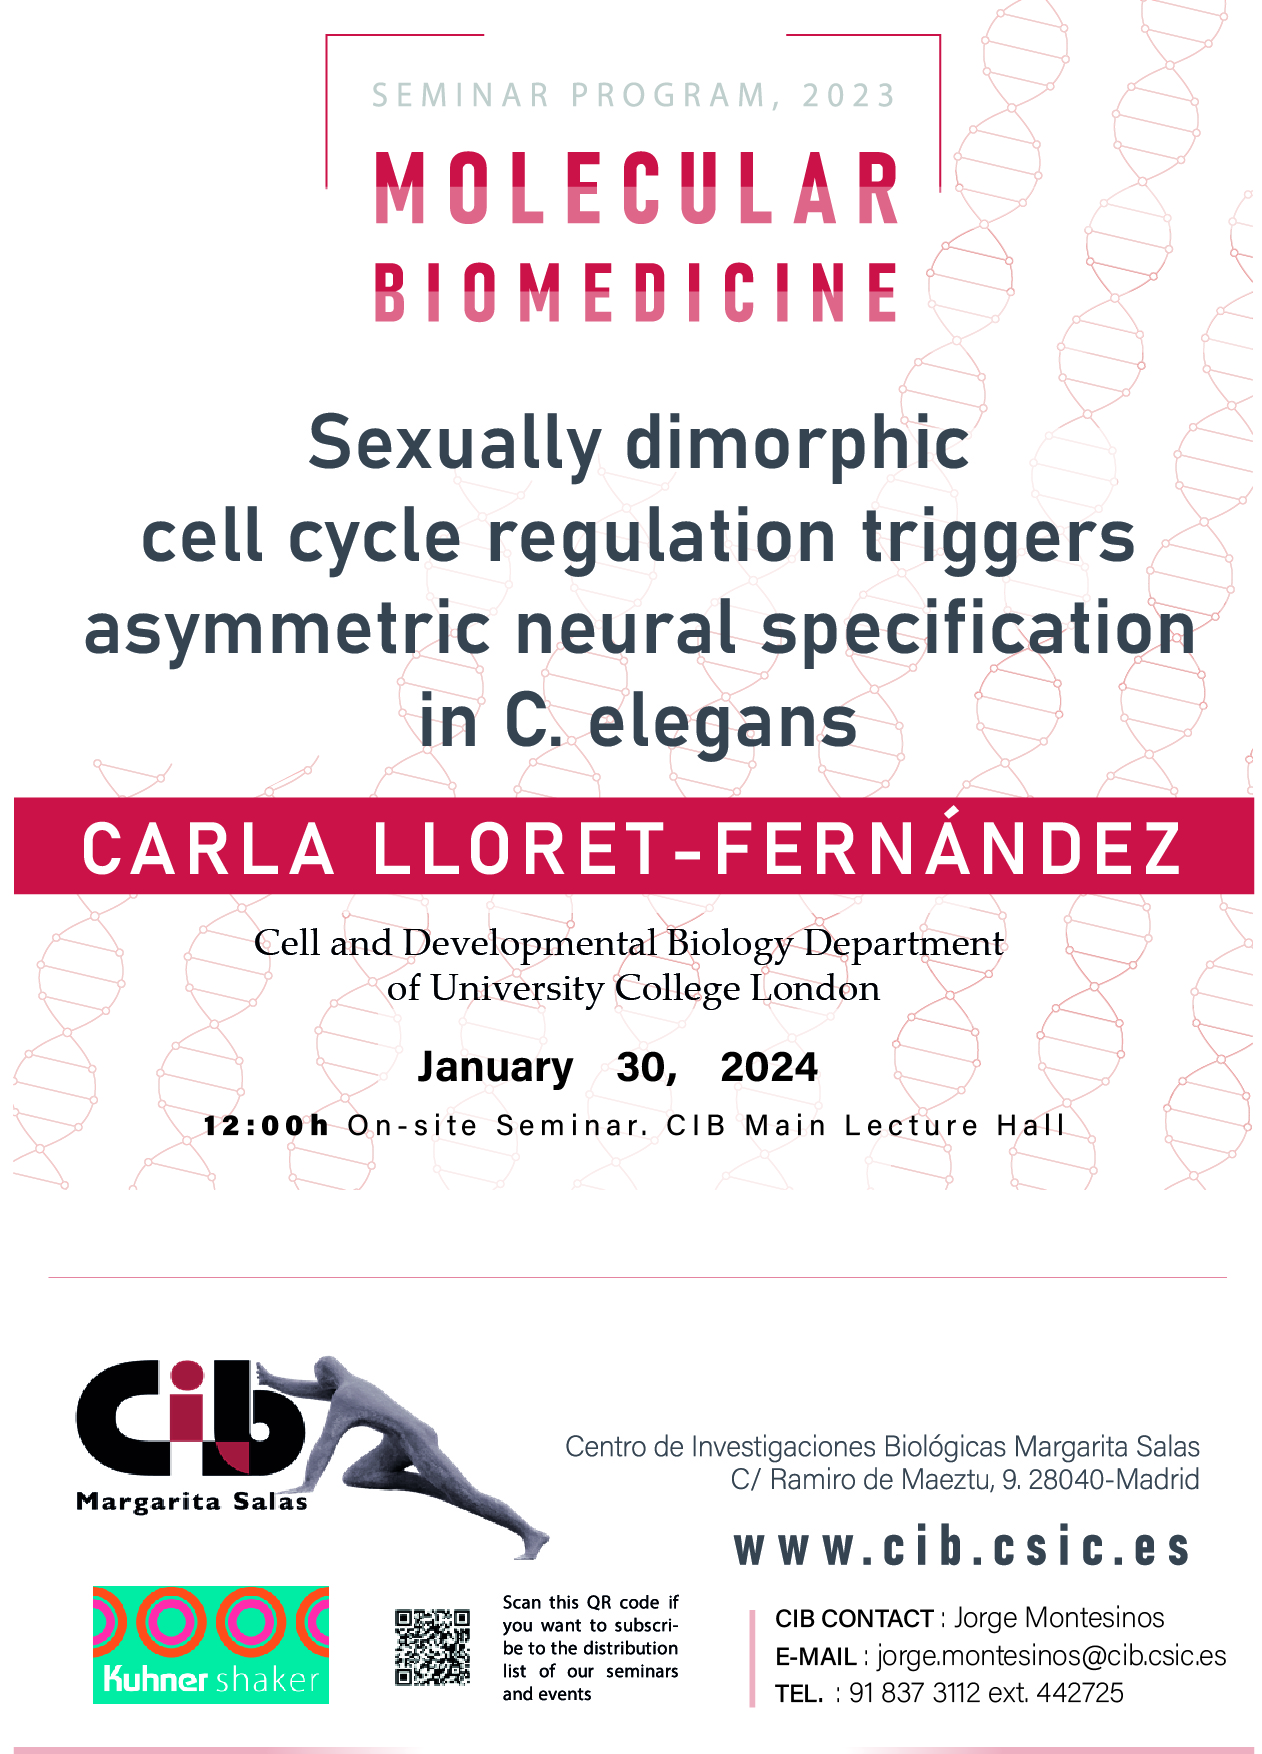 Cartel del seminario de Carla Lloret-Fernández del 30 de enero de 2024